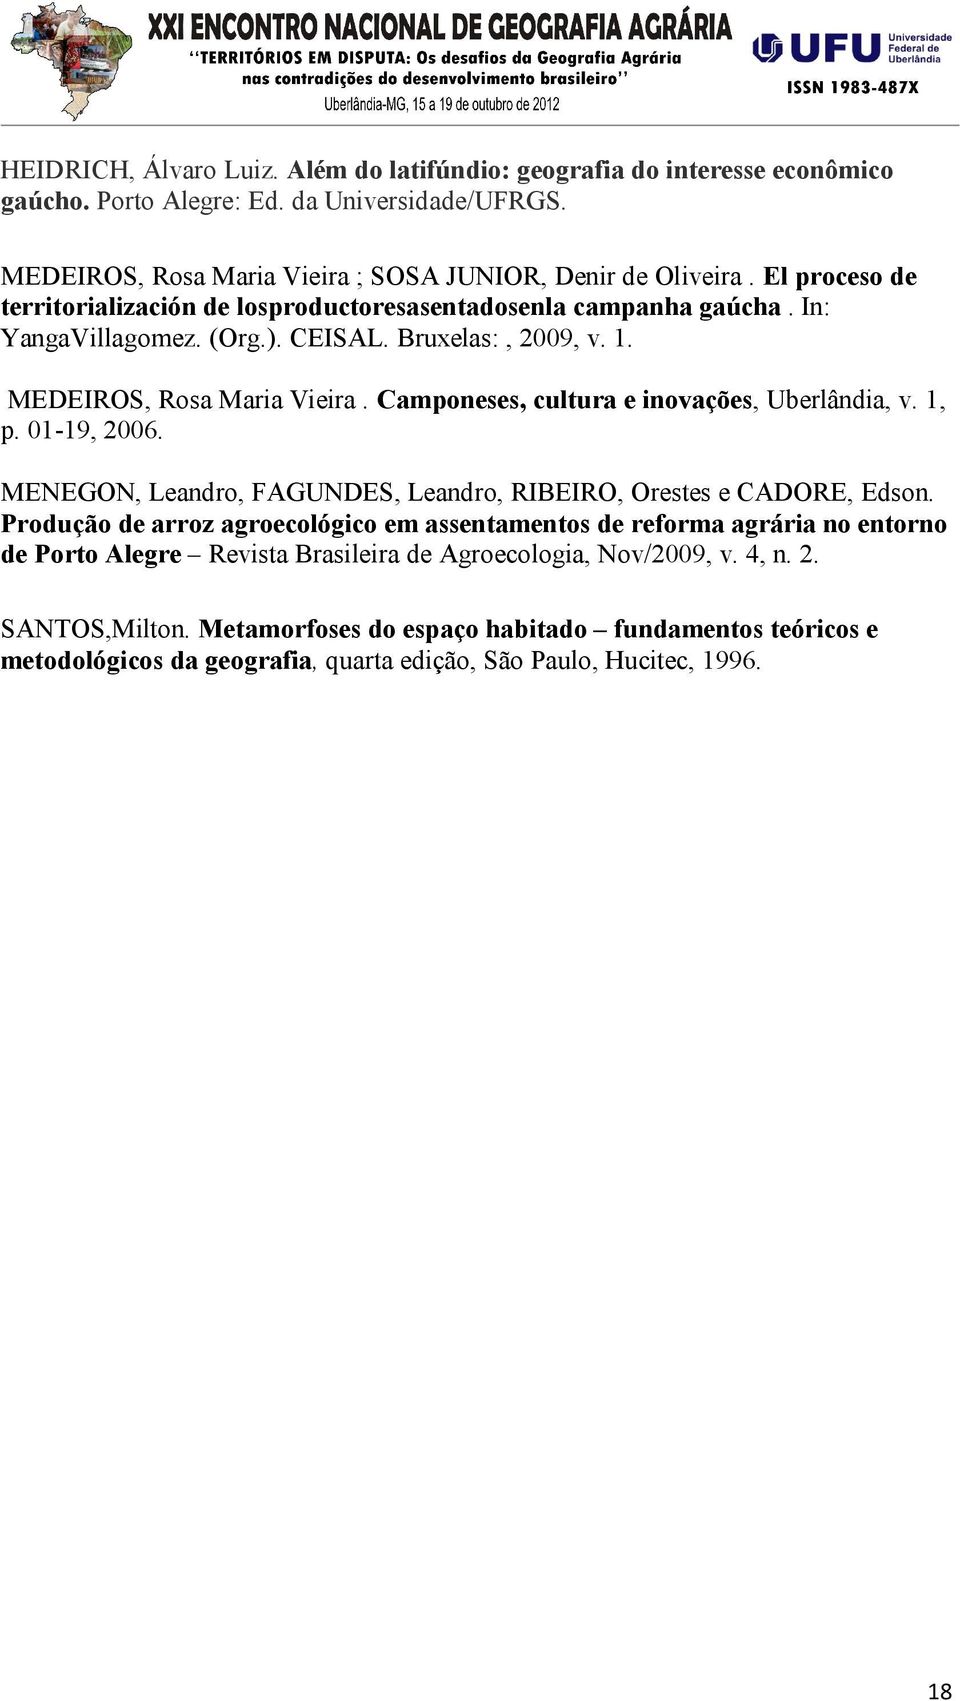 Camponeses, cultura e inovações, Uberlândia, v. 1, p. 01-19, 2006. MENEGON, Leandro, FAGUNDES, Leandro, RIBEIRO, Orestes e CADORE, Edson.